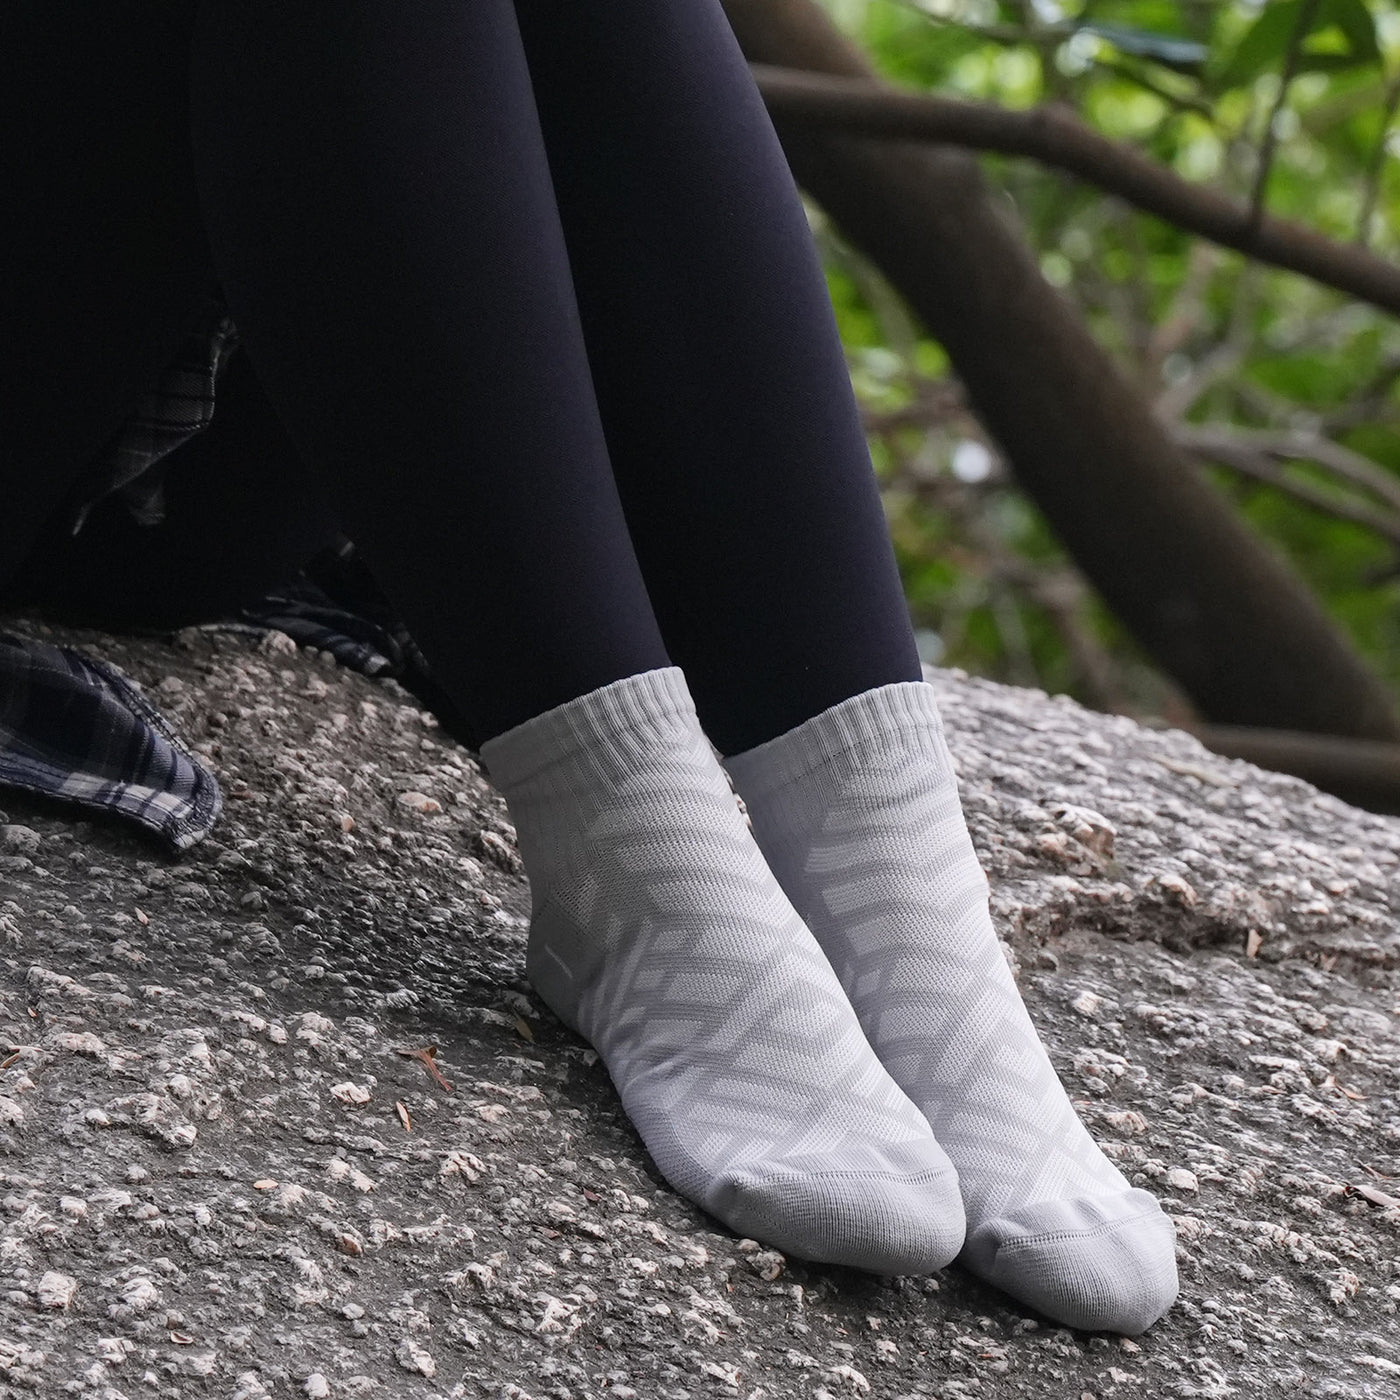 2 paires de chaussettes de randonnée pour femmes de haute qualité, taille UK 3-7/Europe 36-40